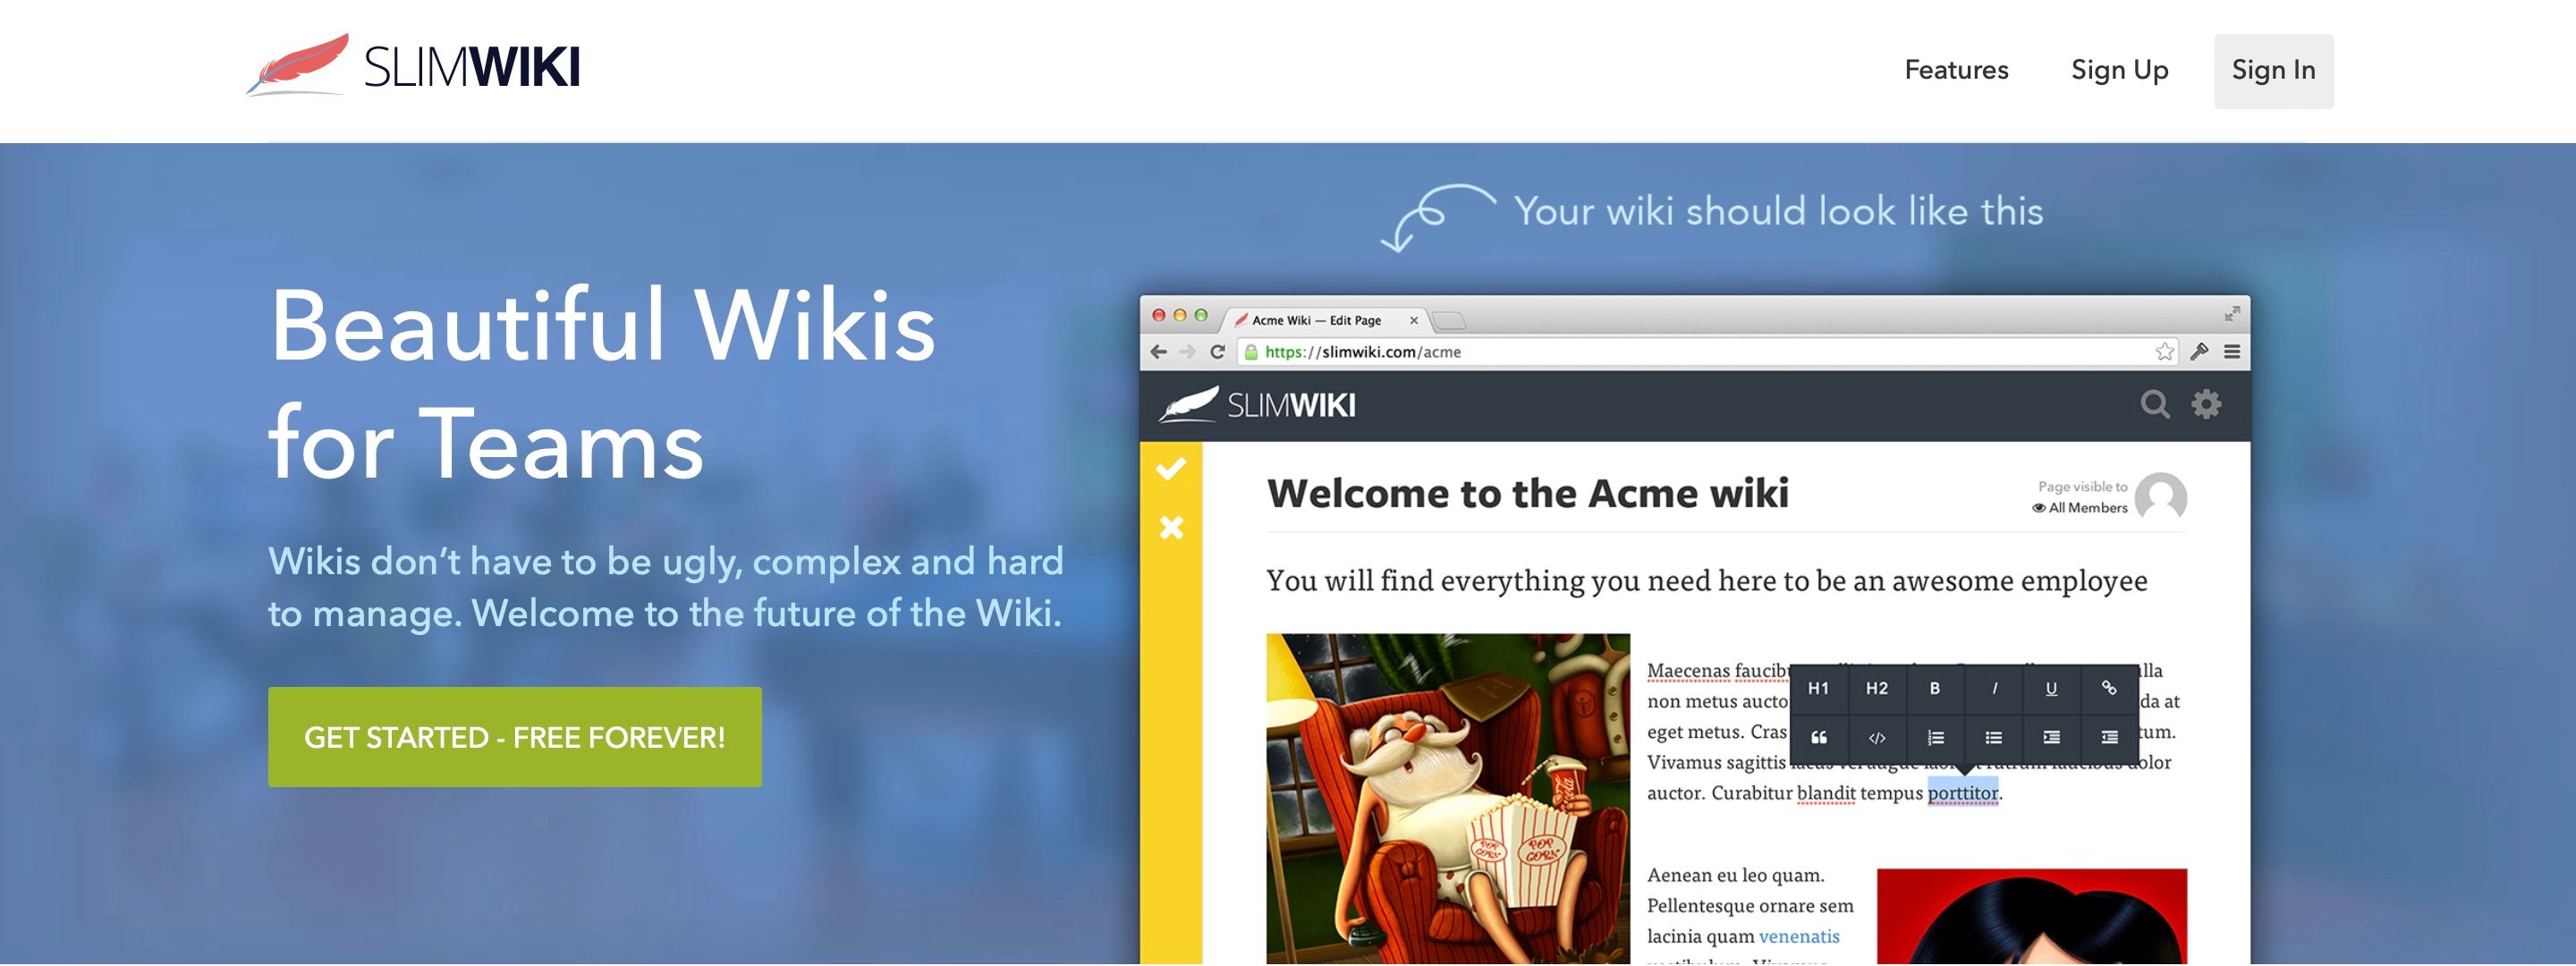 SlimWiki website